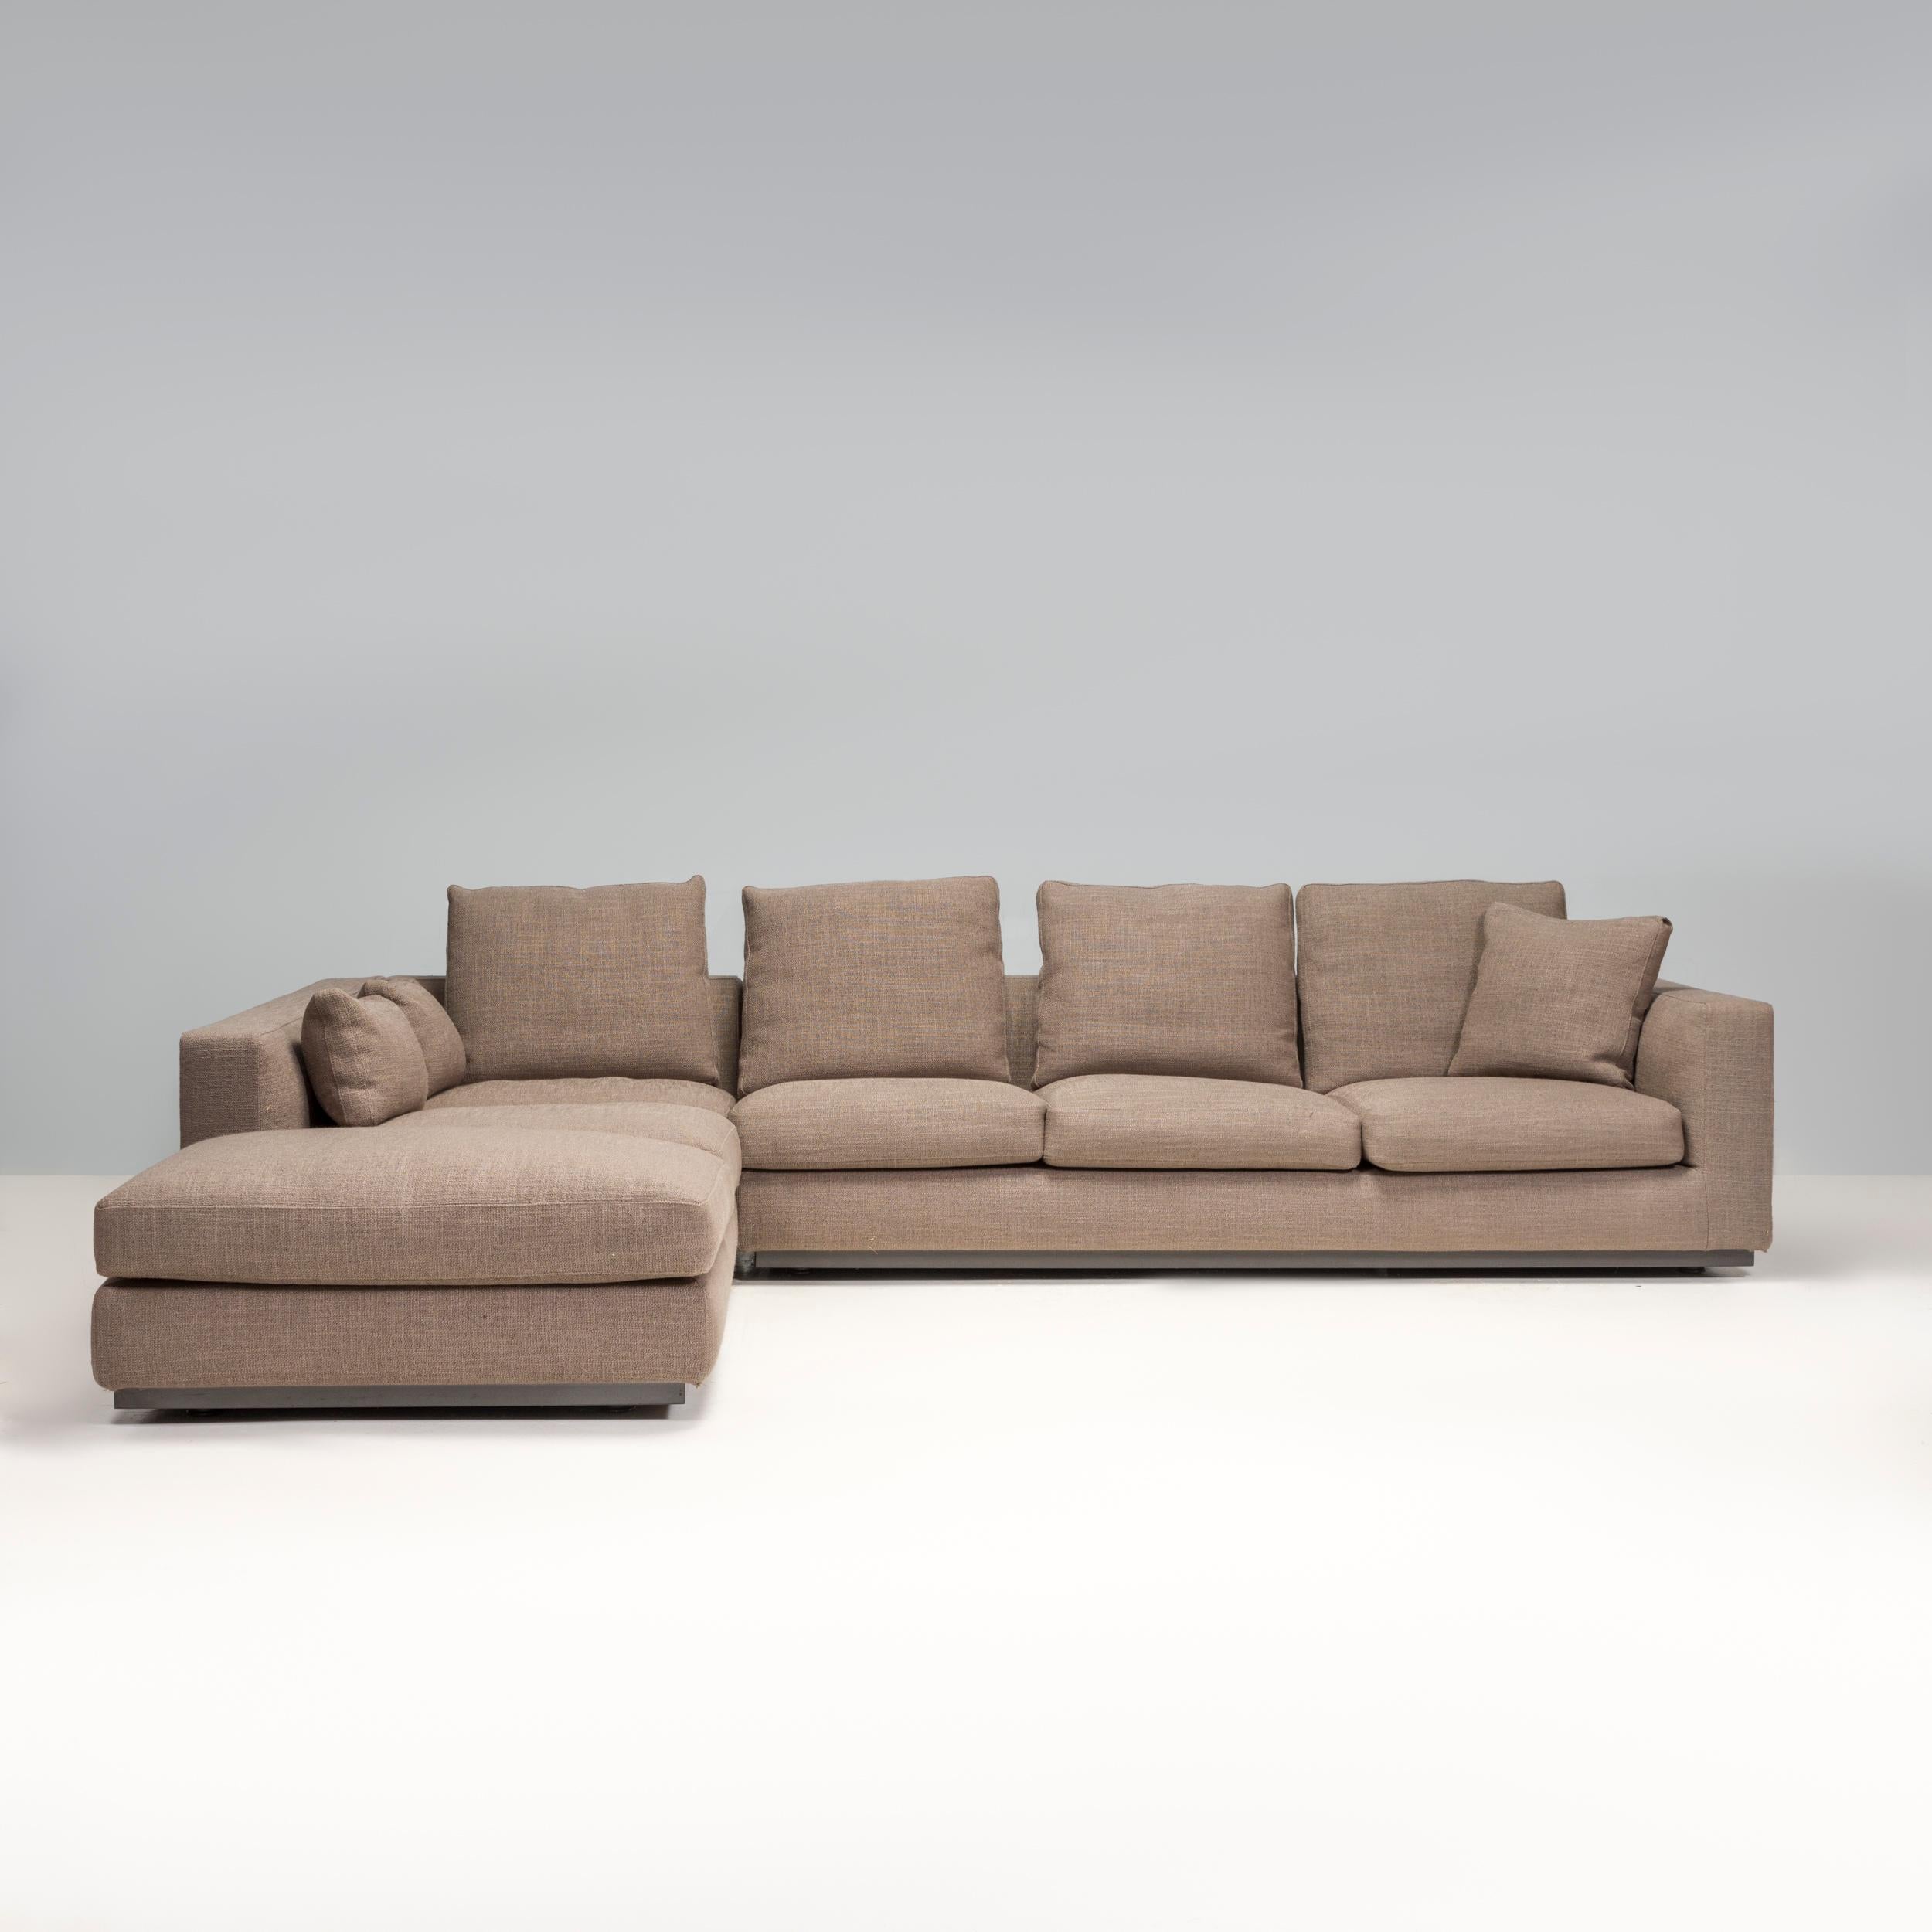 Disegnato da Rodolfo Dordoni per Minotti, il divano Andersen Line faceva parte della Collezione Senza Tempo 2010 e incarna un design italiano senza tempo.

Completamente rivestito in tessuto grigio, il divano ha una silhouette moderna e lineare che